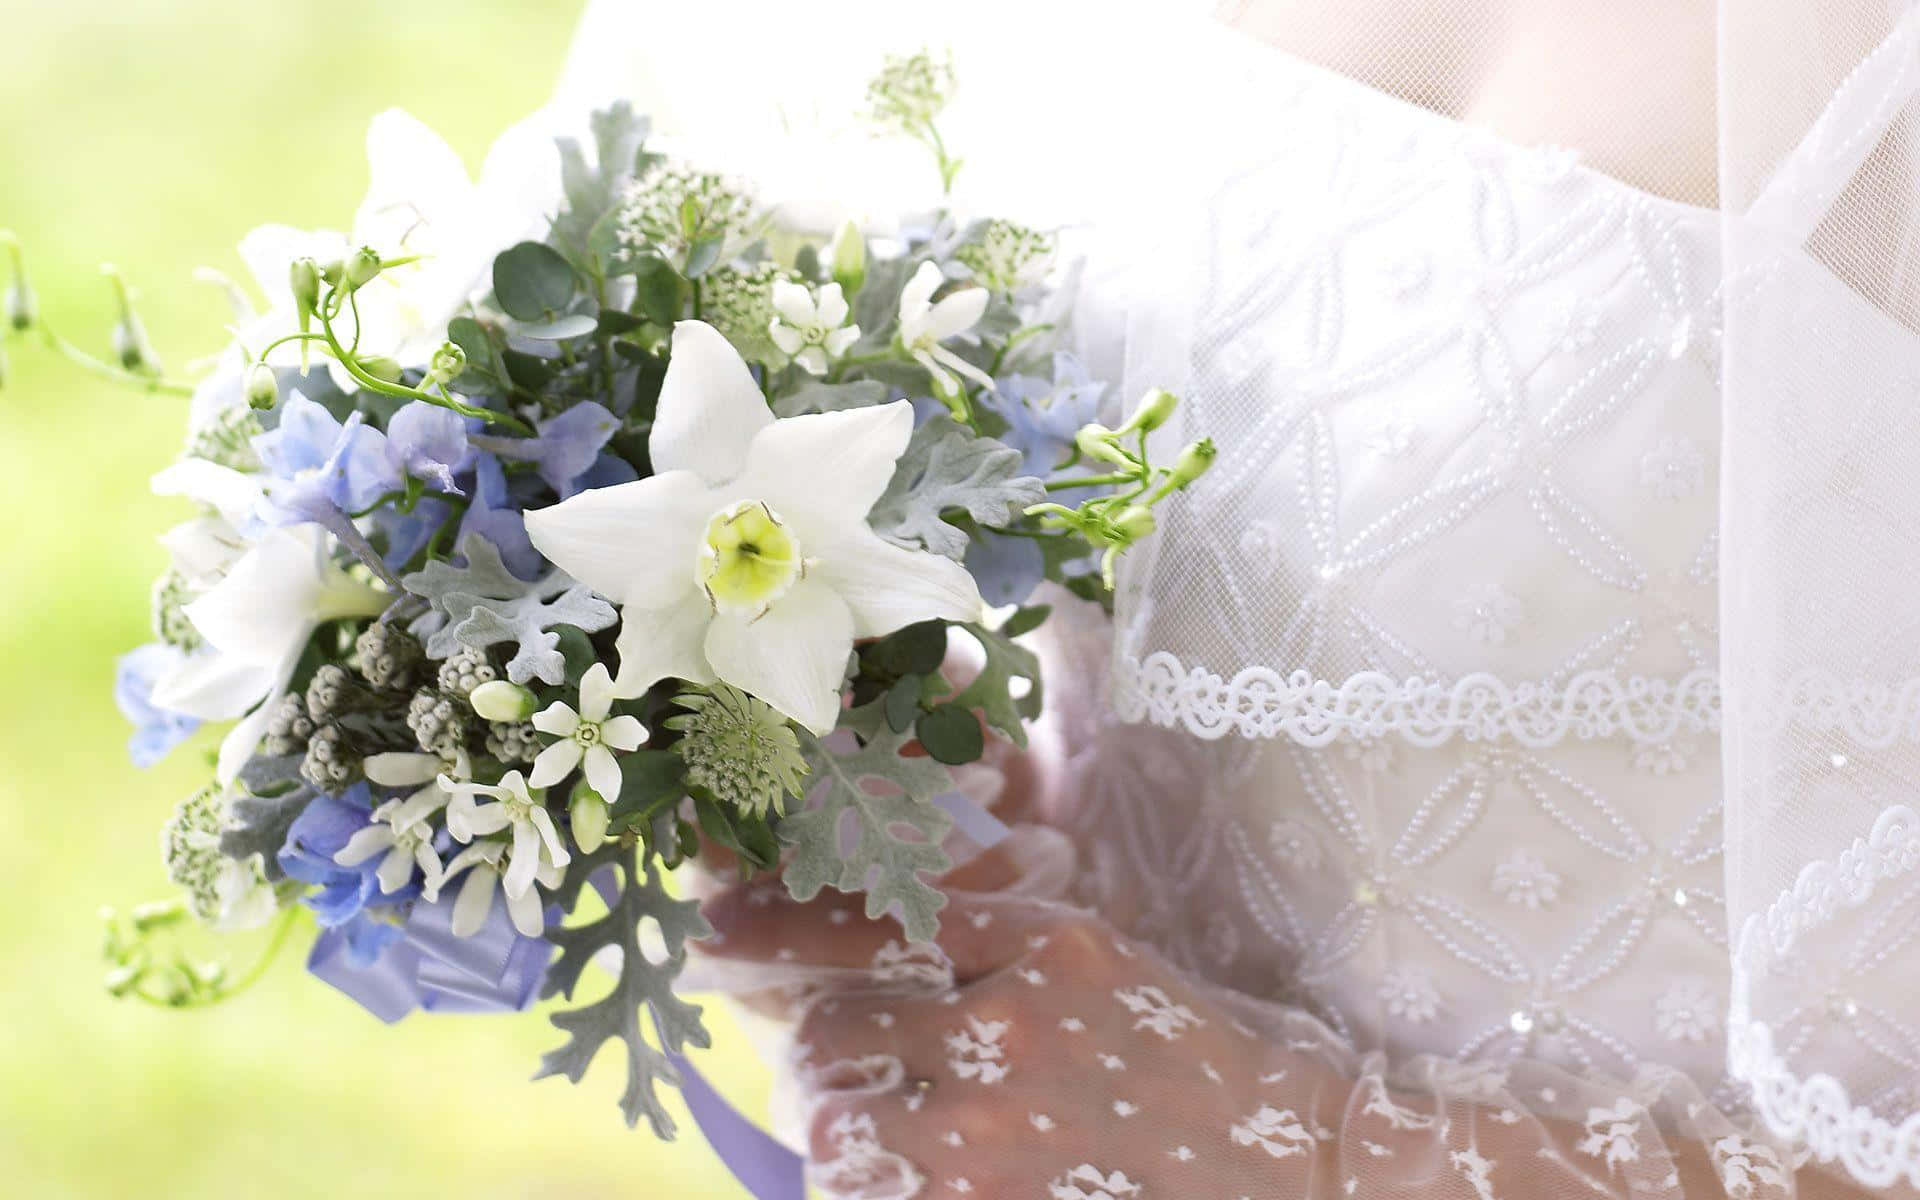 A Vibrant Floral Arrangement for a Wedding Wallpaper